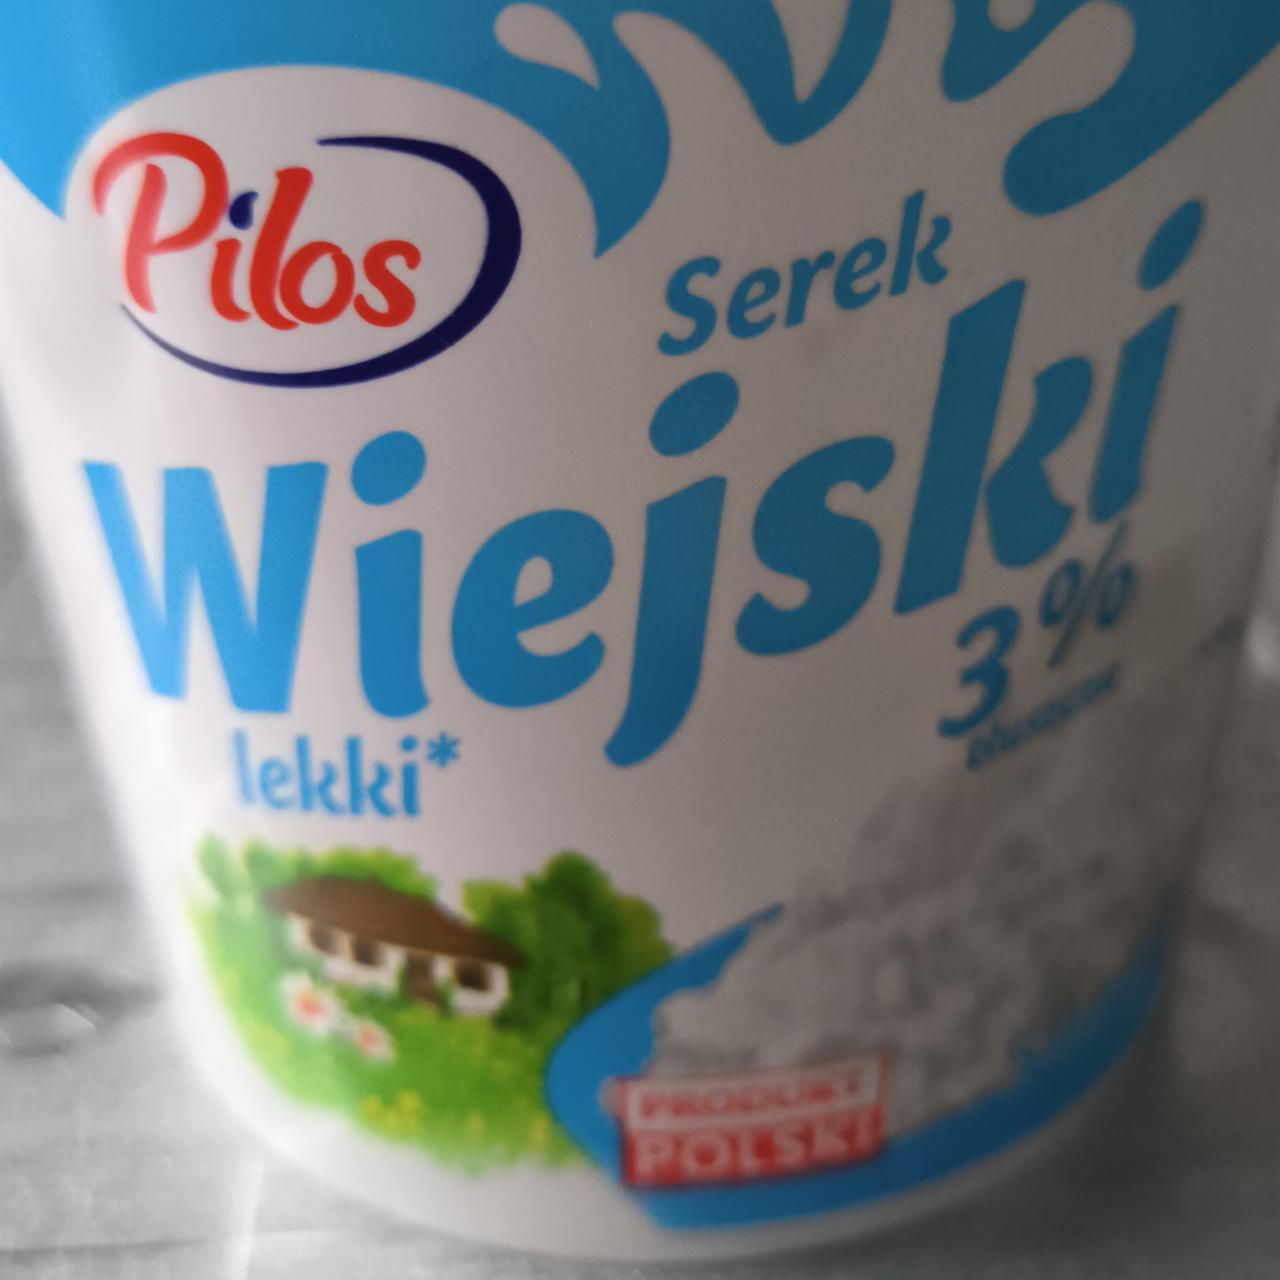 Fotografie - Serek Wiejski lekki 3% Pilos